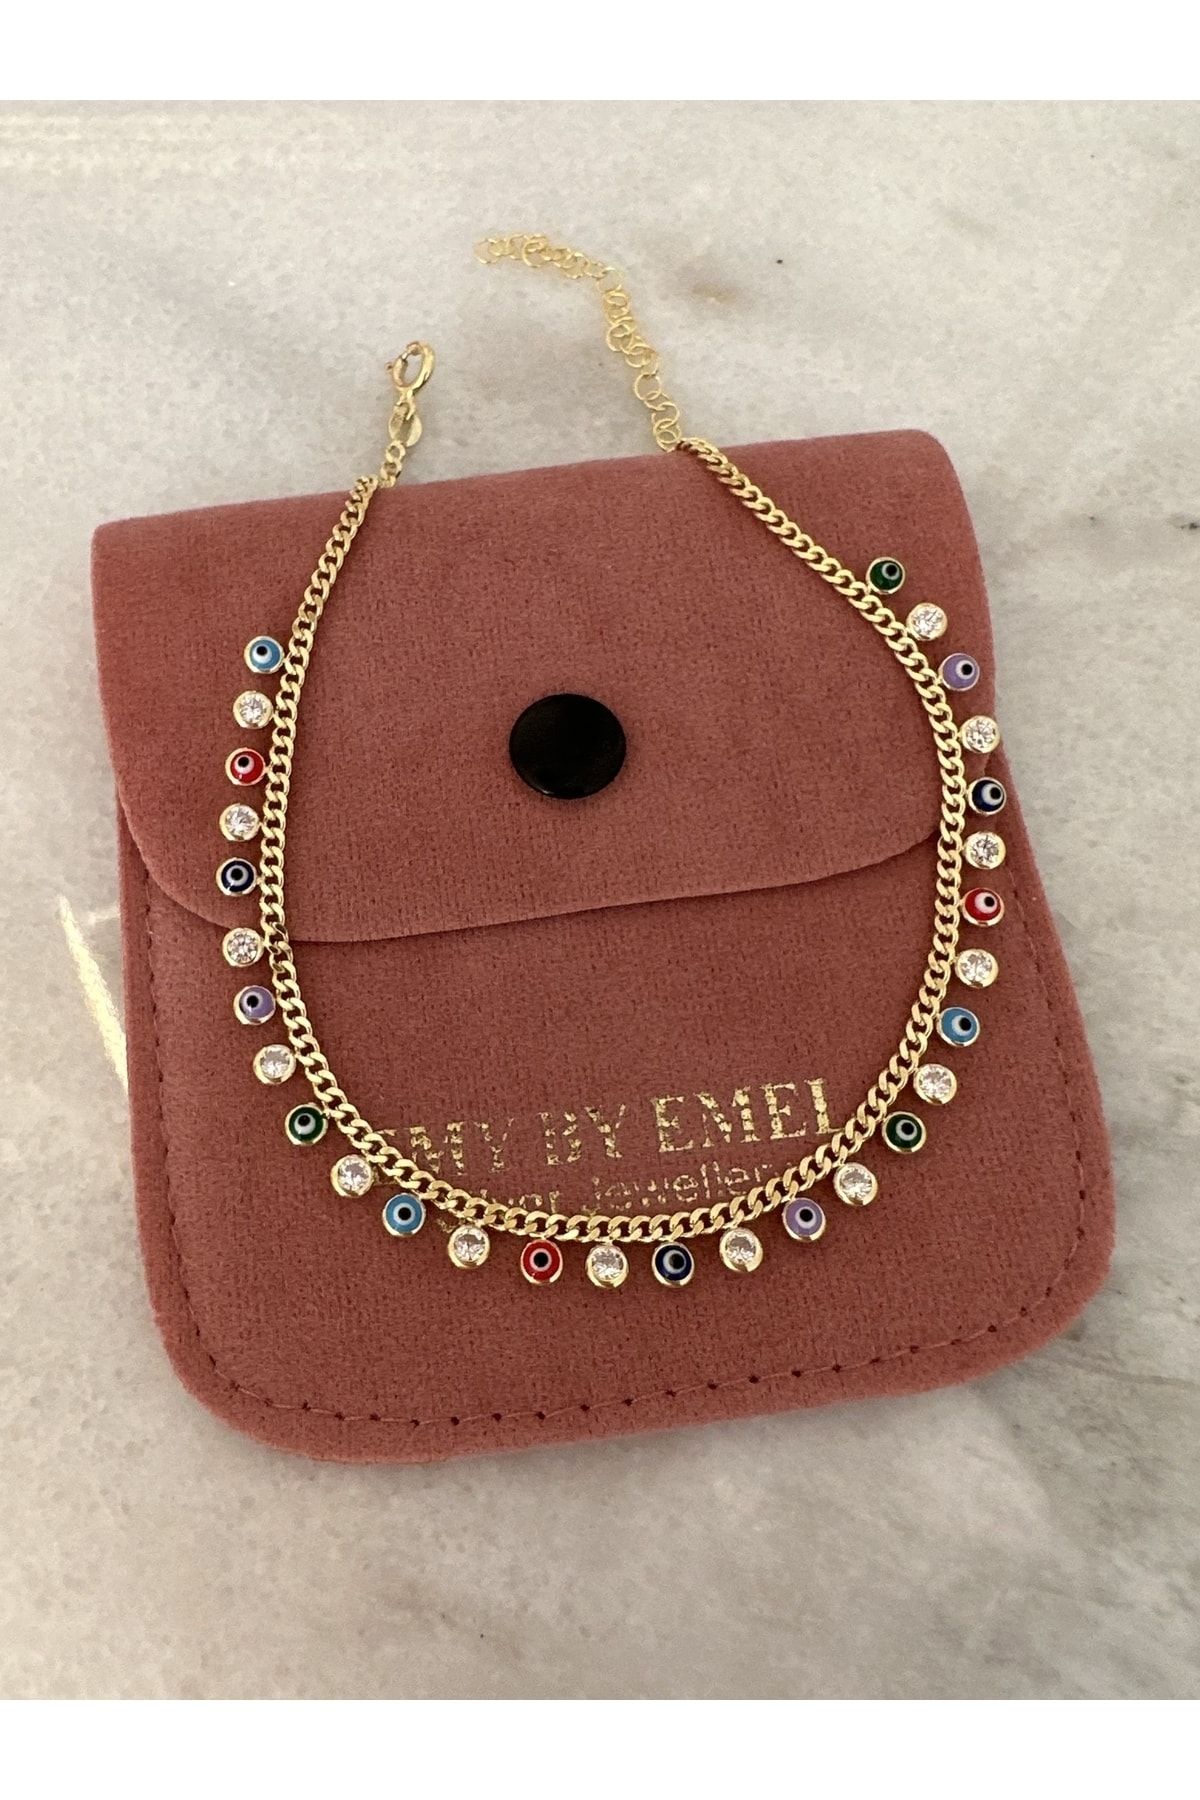 emy by emel luxury silver jewelry Halhal Nazar Boncuklu Renkli Mineli 925 Ayar Gümüş